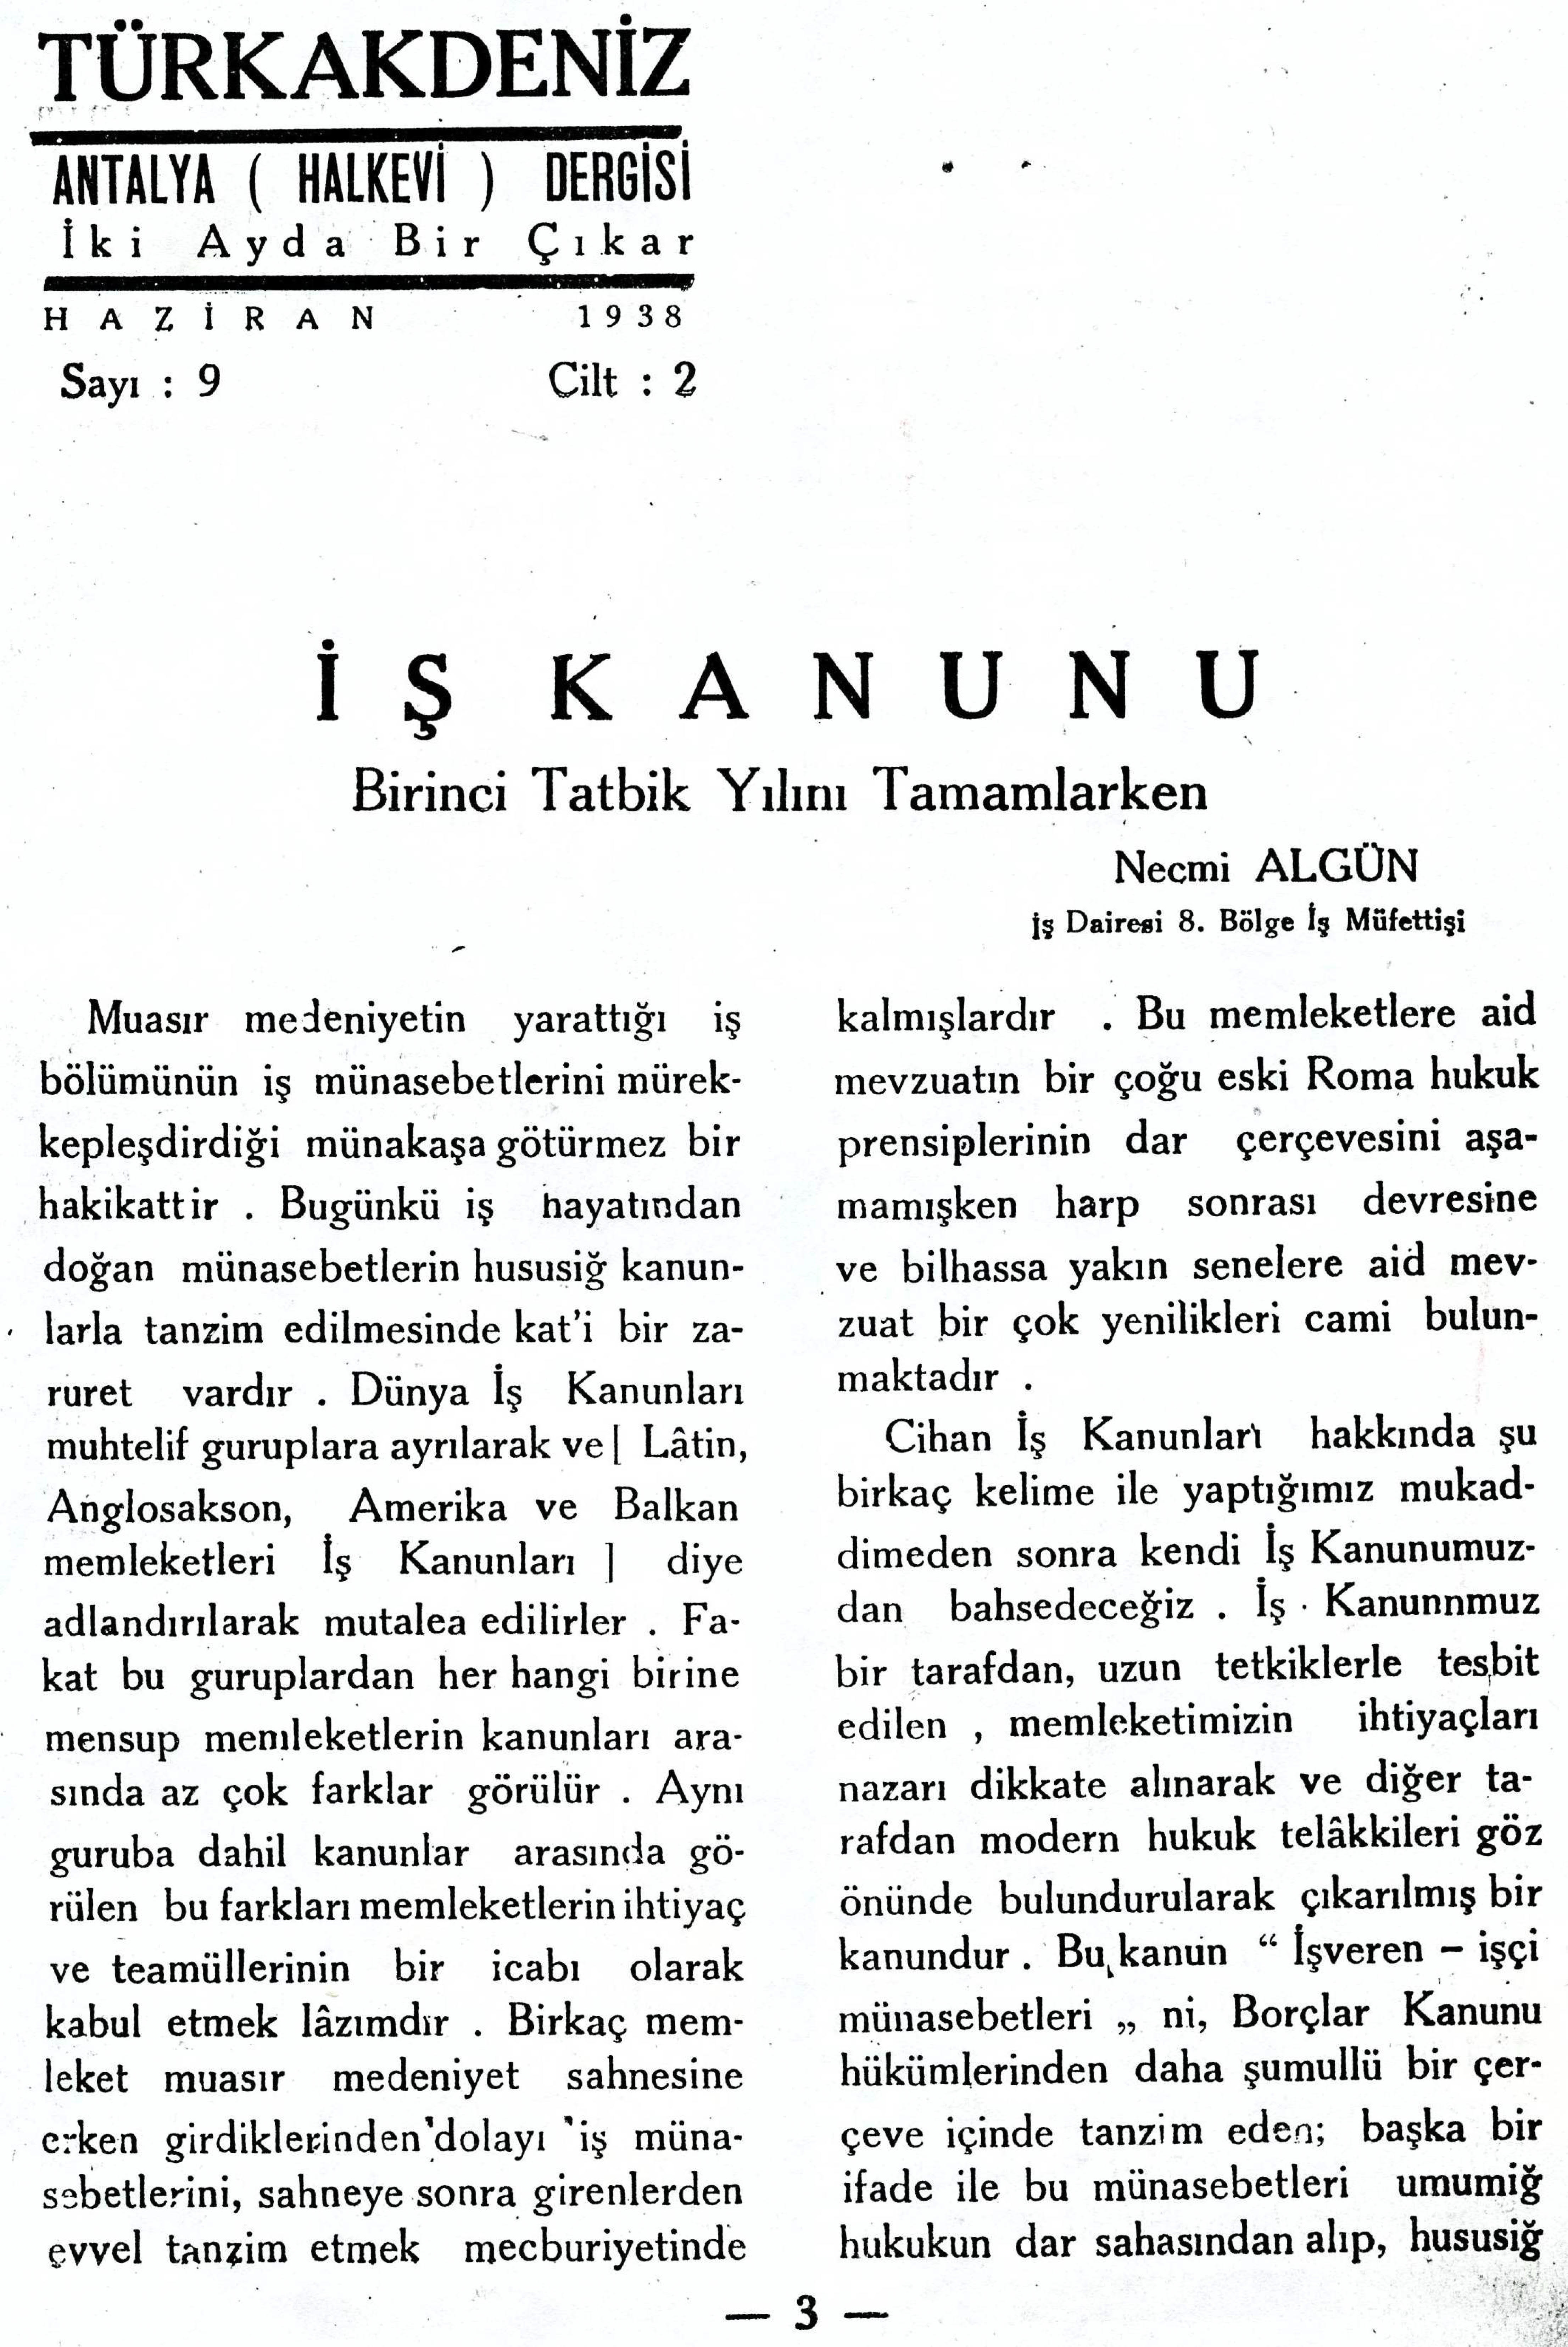 he-turk-akdeniz_1938-2(09)